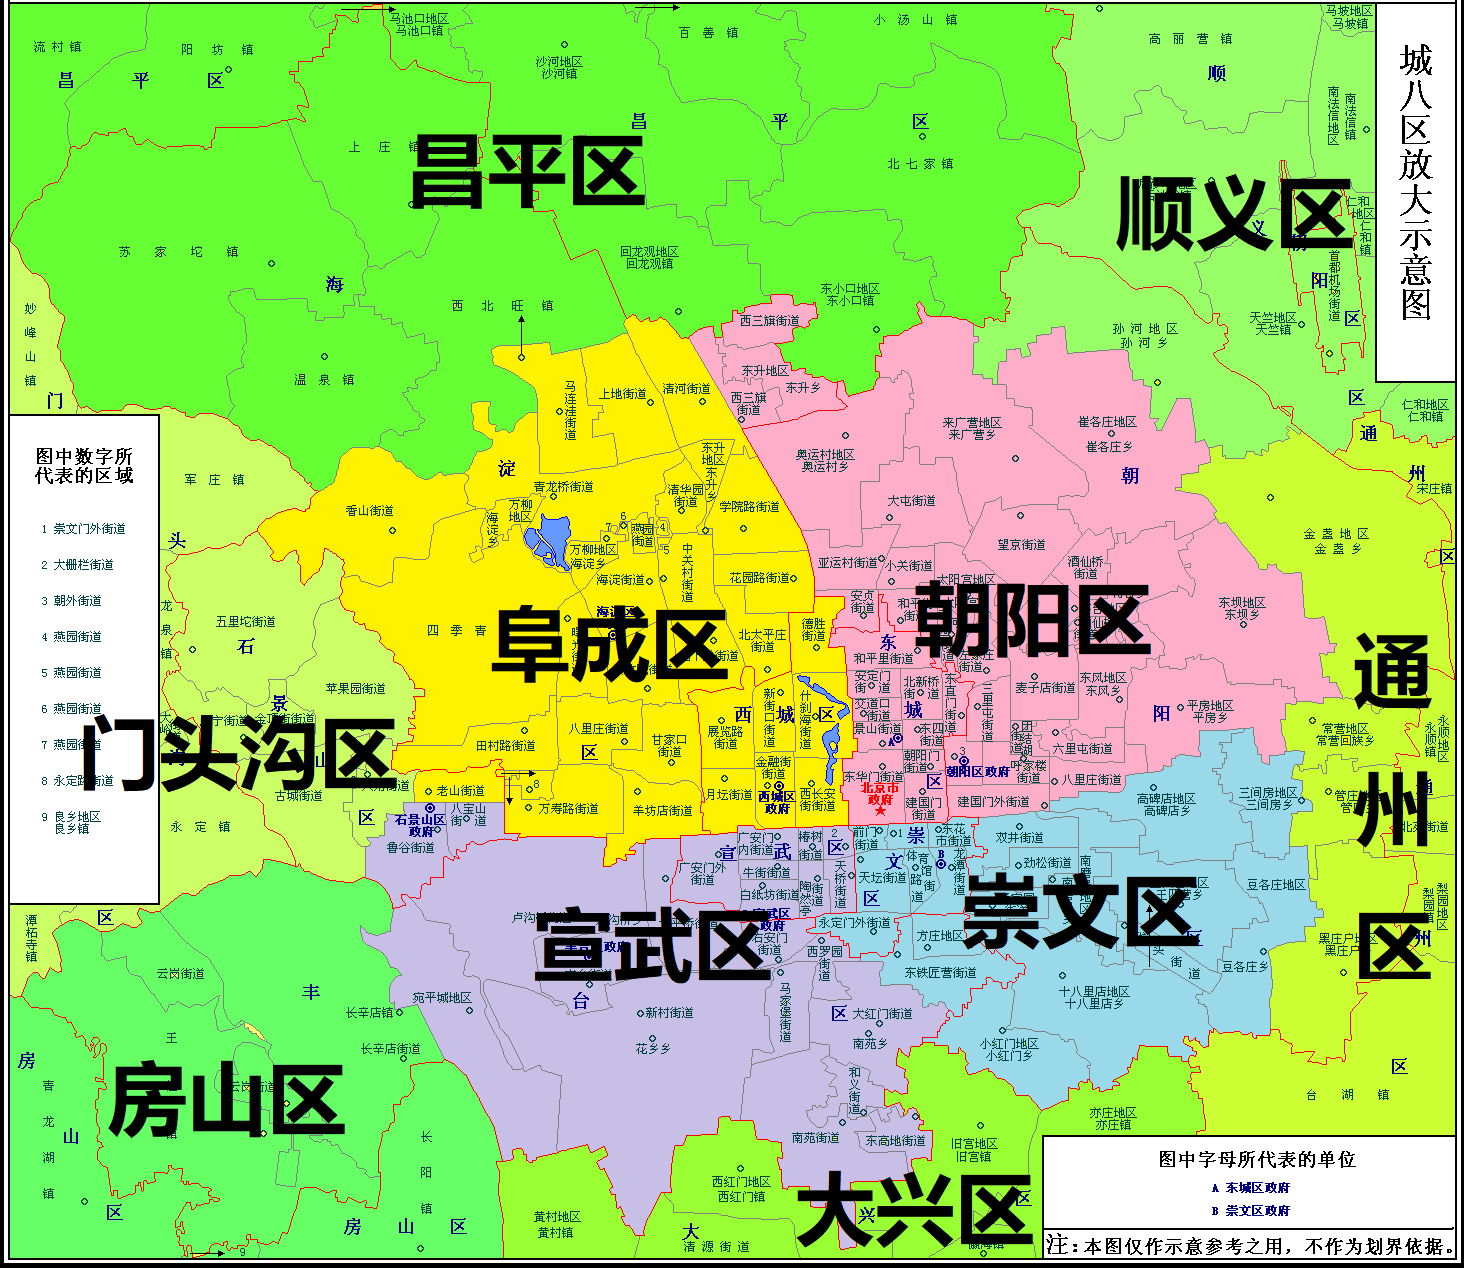 前几年北京城四区合并为城二区时是不是保留崇文宣武的名称会比西城